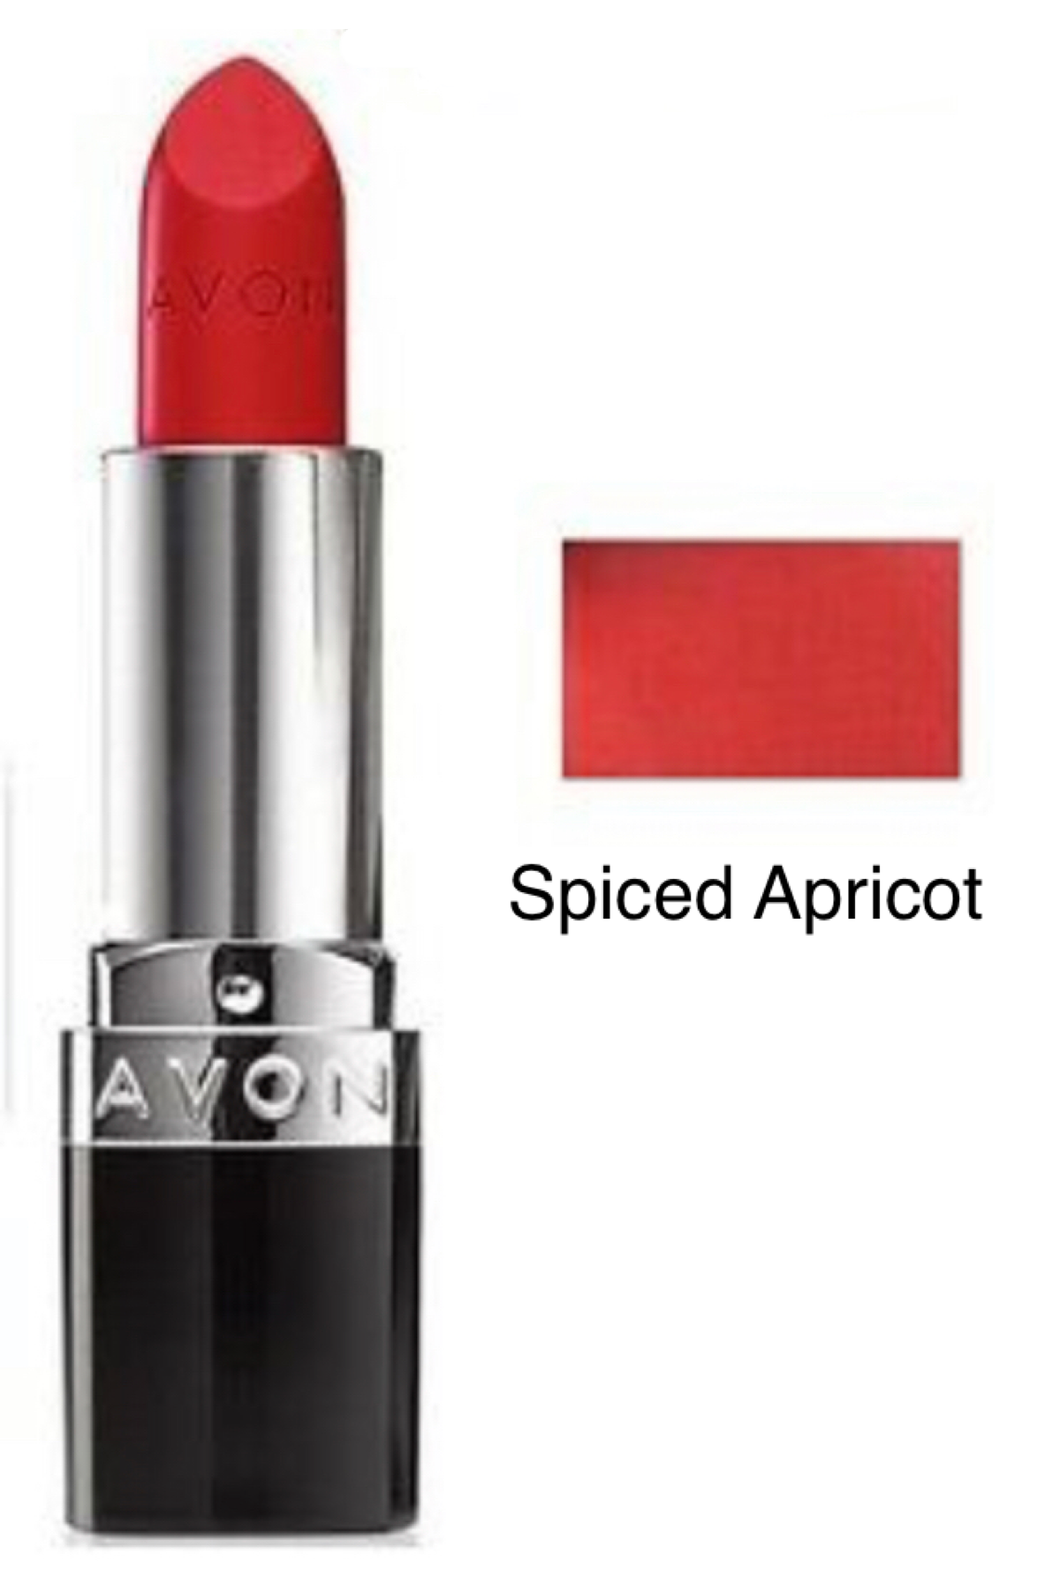 Spiced Apricot True Color Lipstick